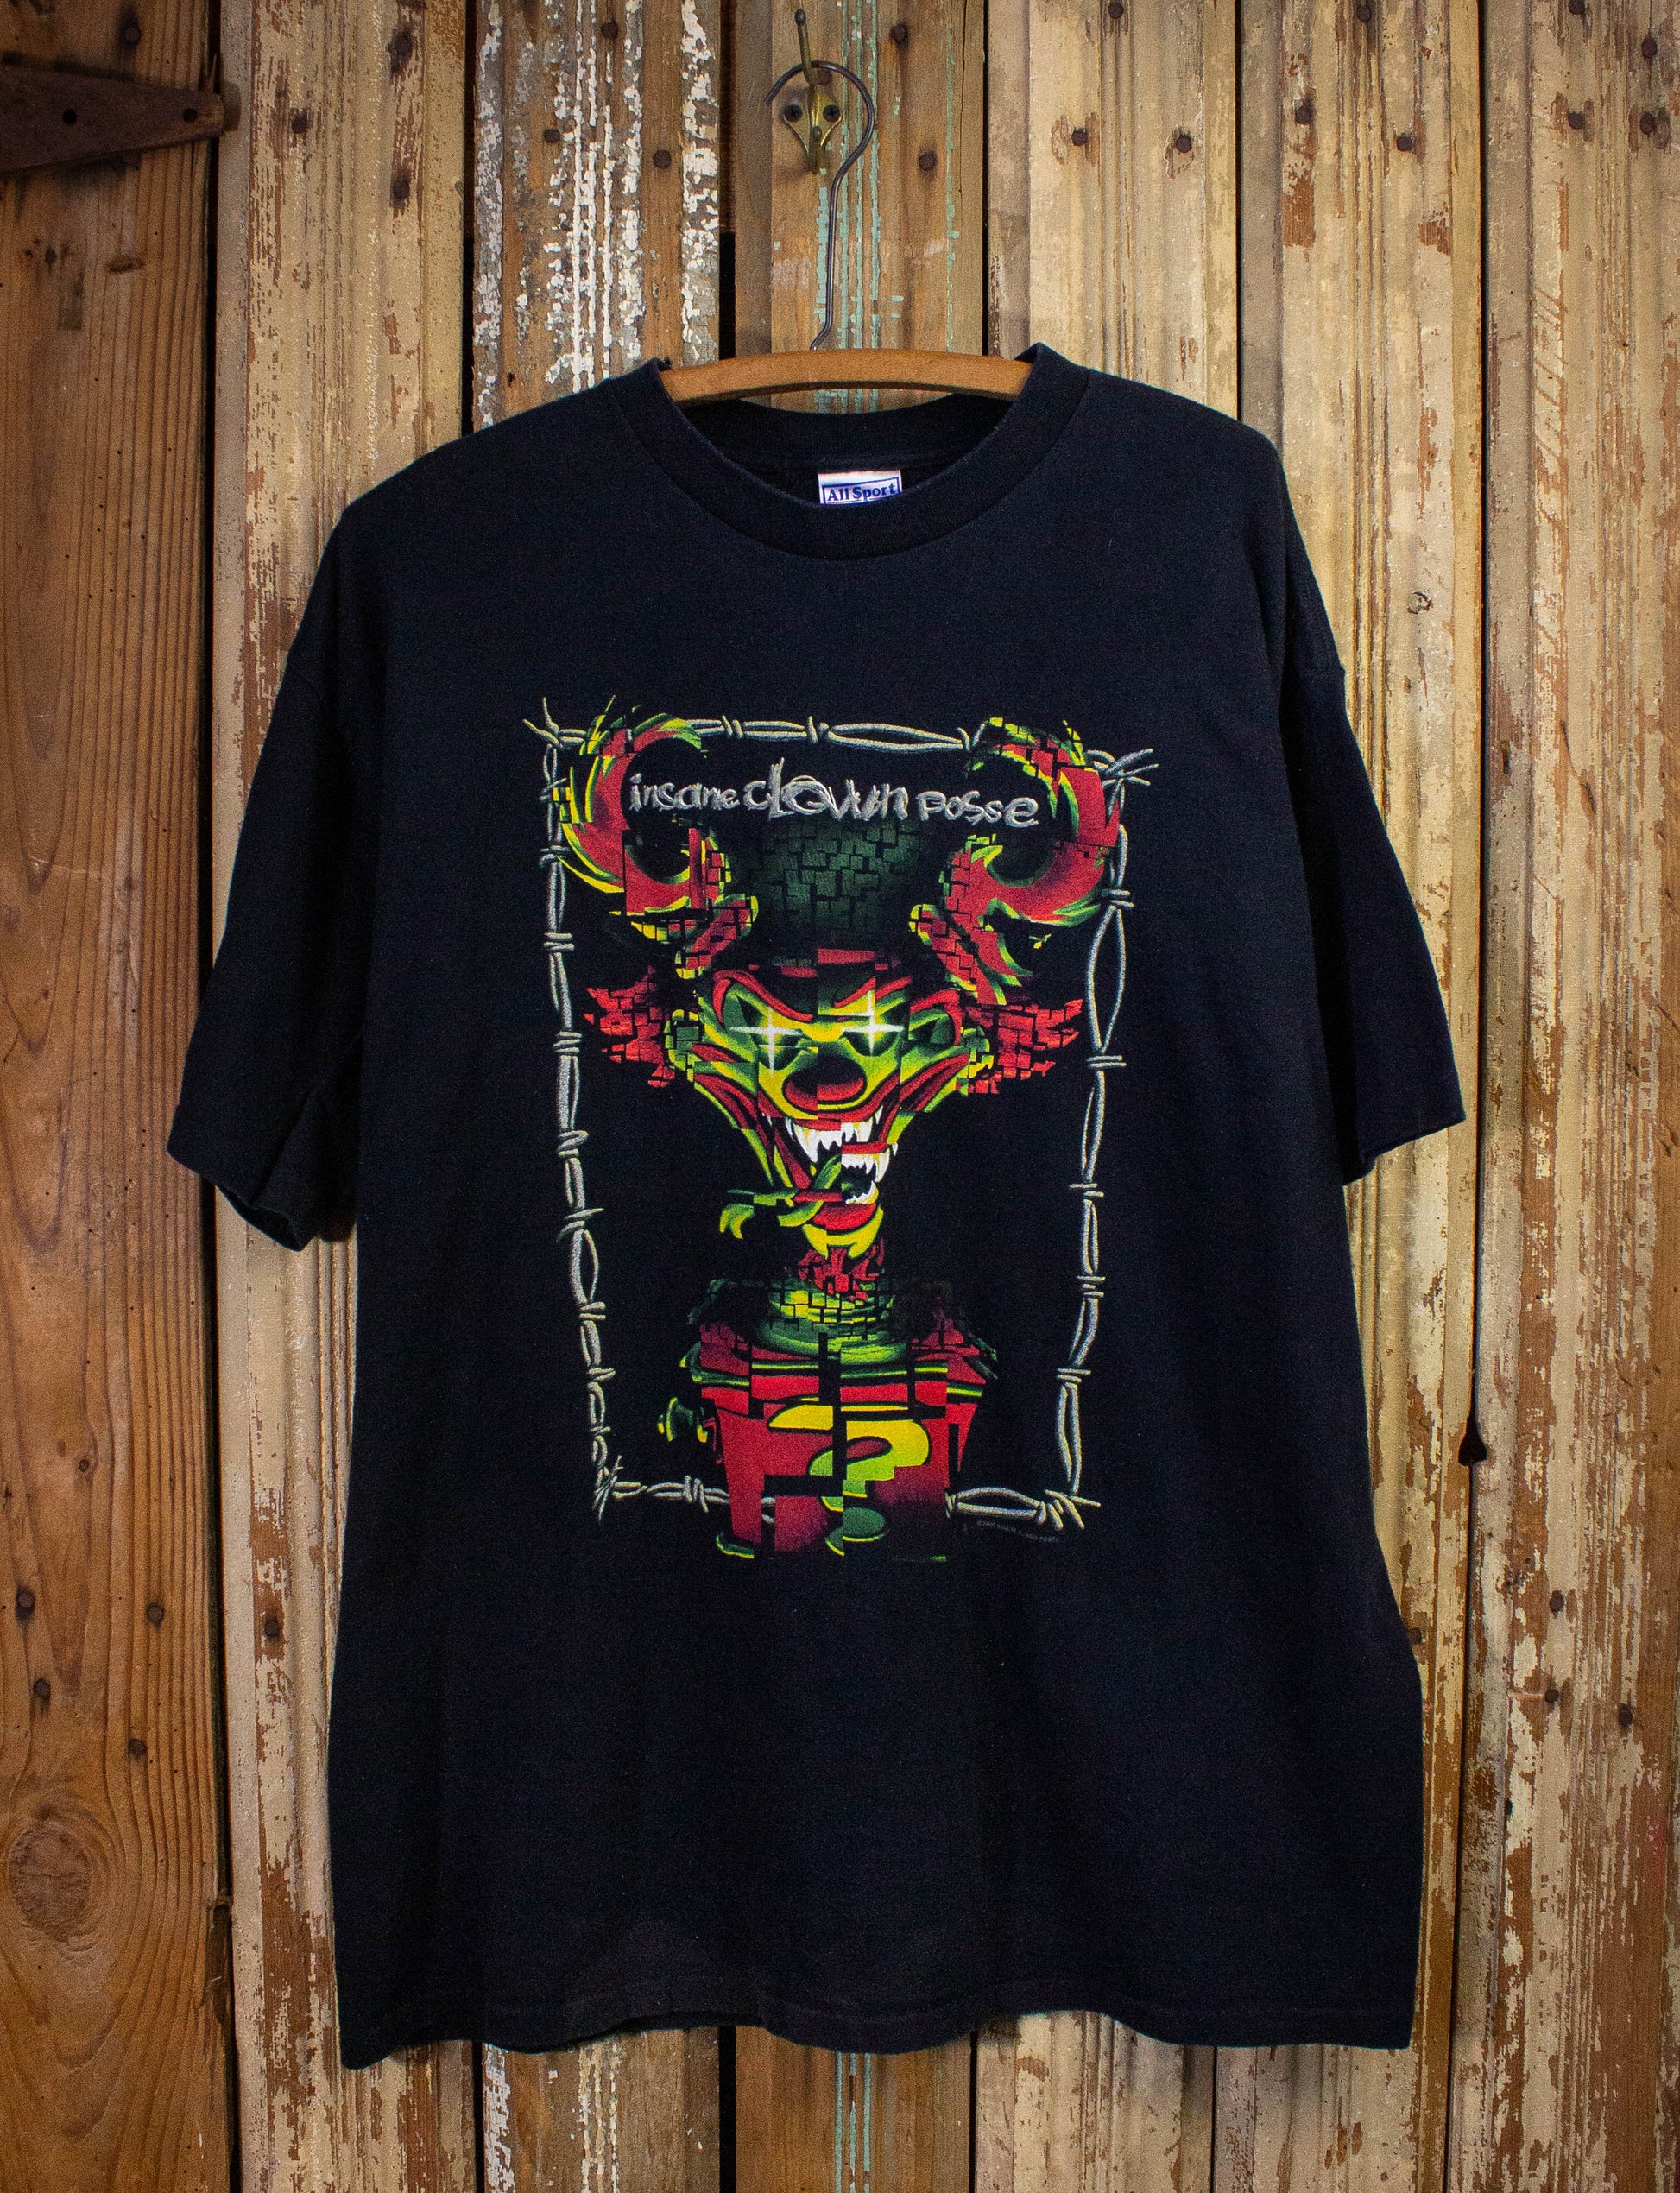 Vintage Insane Clown Posse Concert T Shirt 2000 Black XL